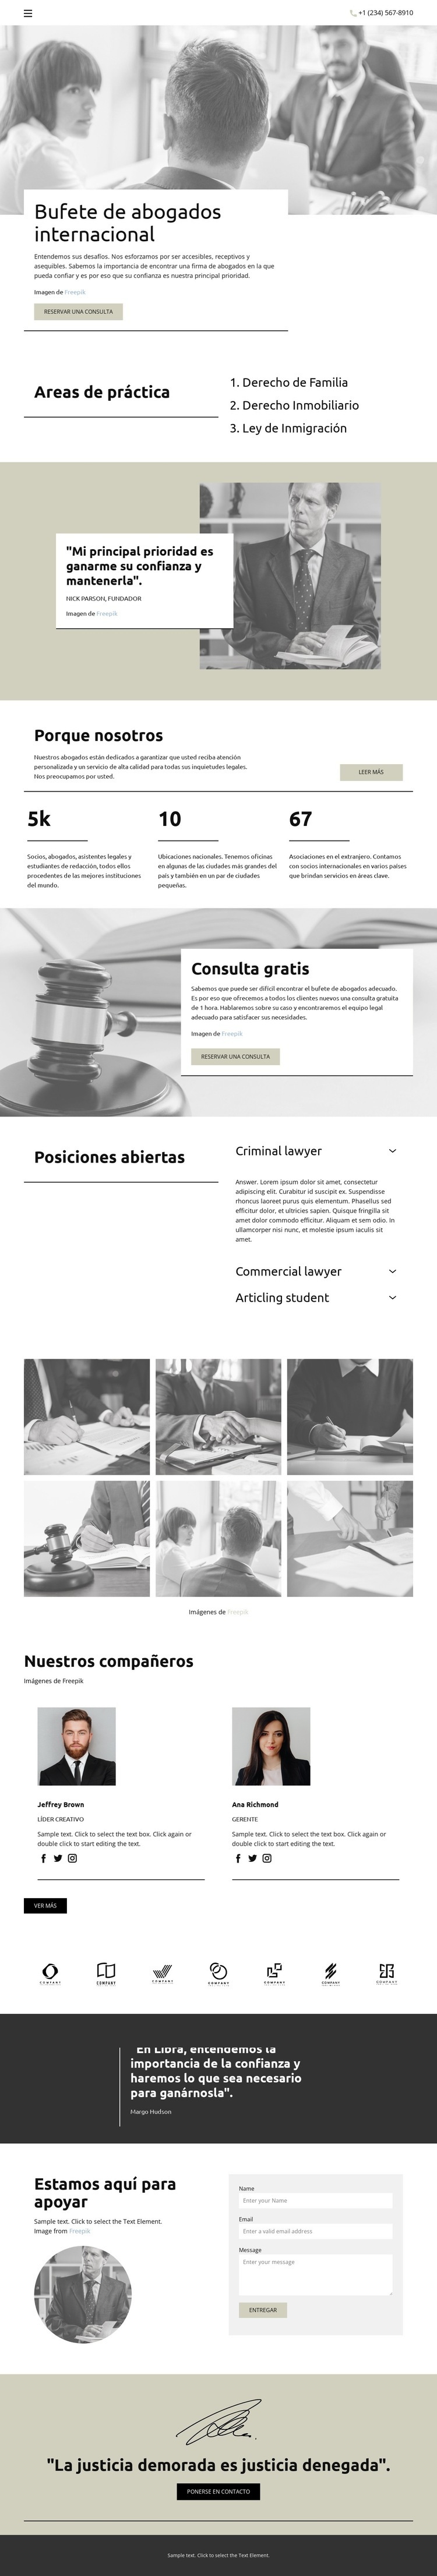 Bufete de abogados internacional Diseño de páginas web